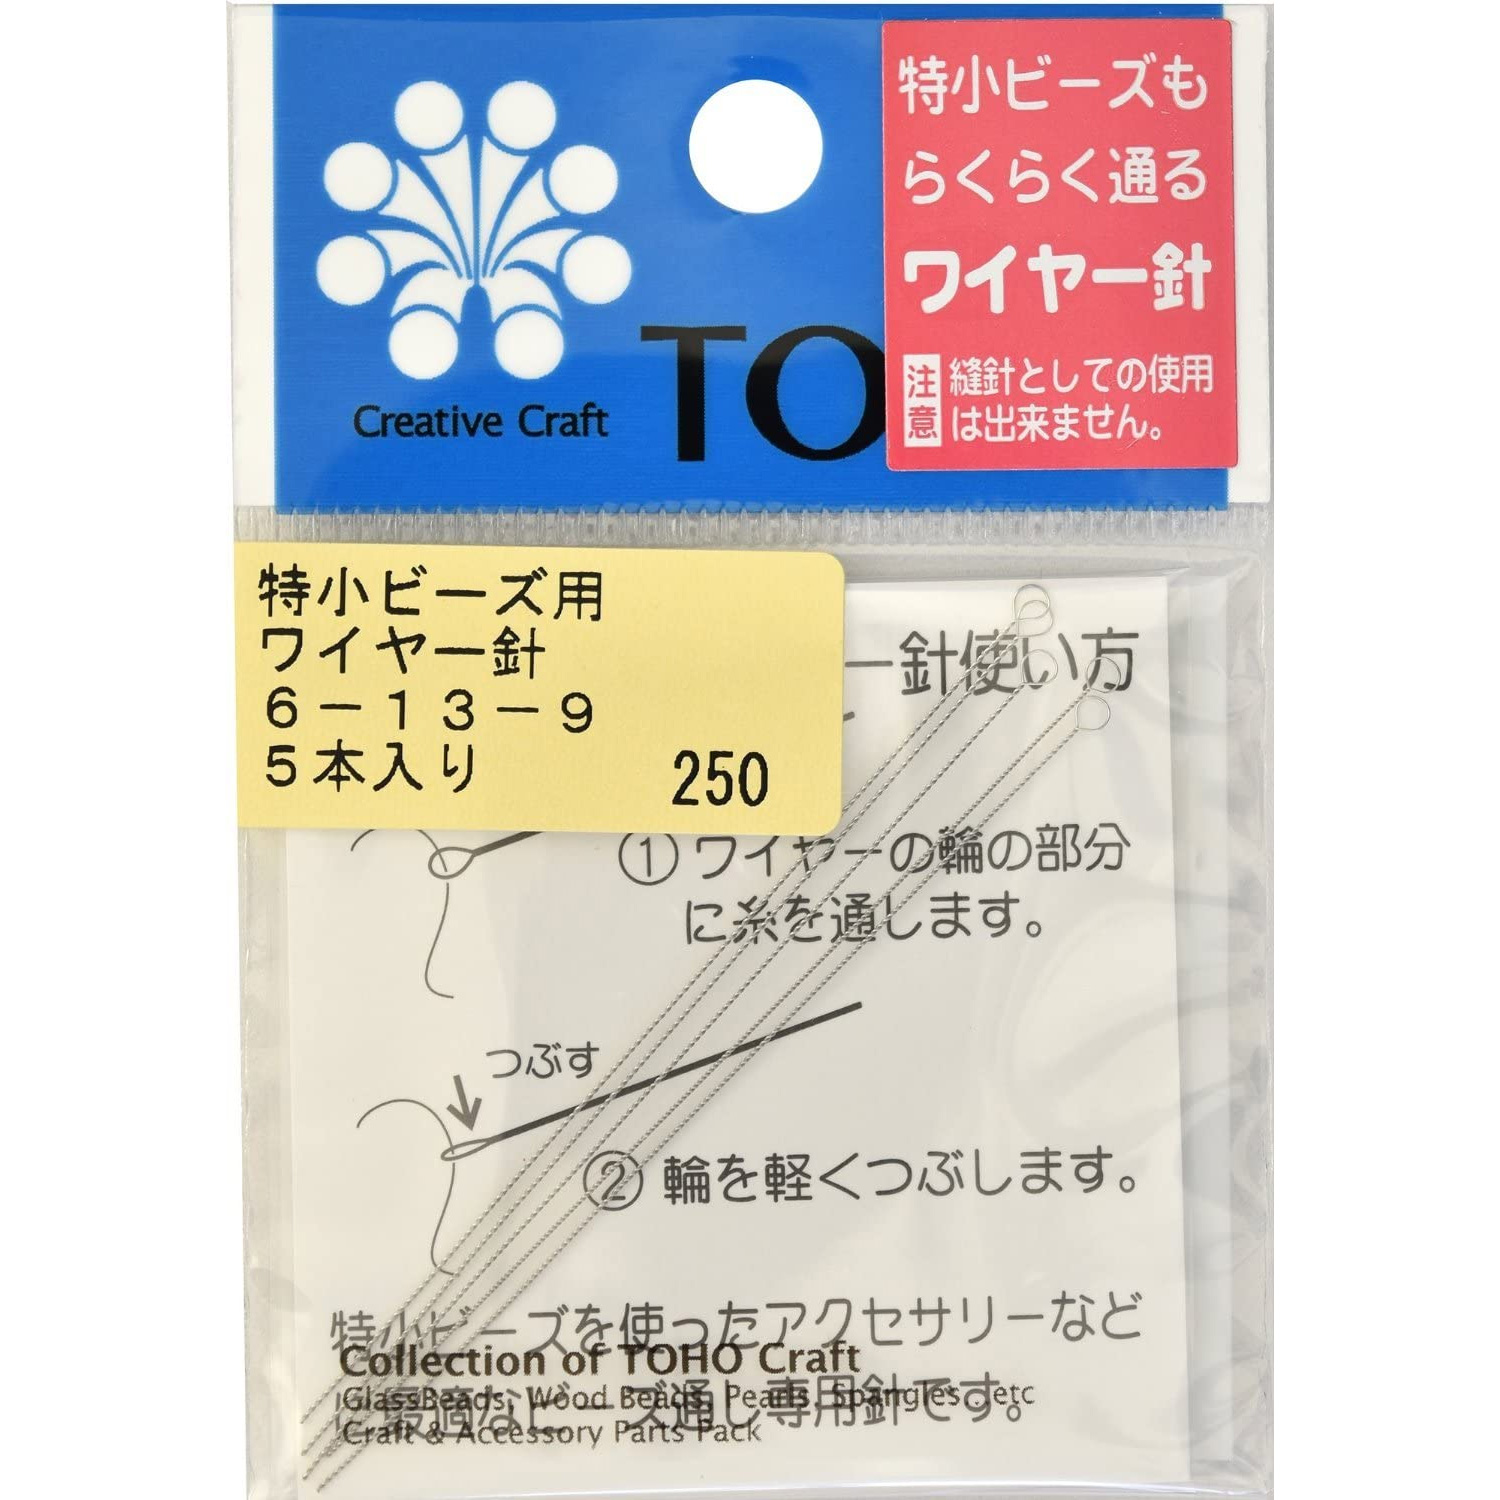 TOH-6-13-9 特小ビーズ用ワイヤー針 5本入 (枚)